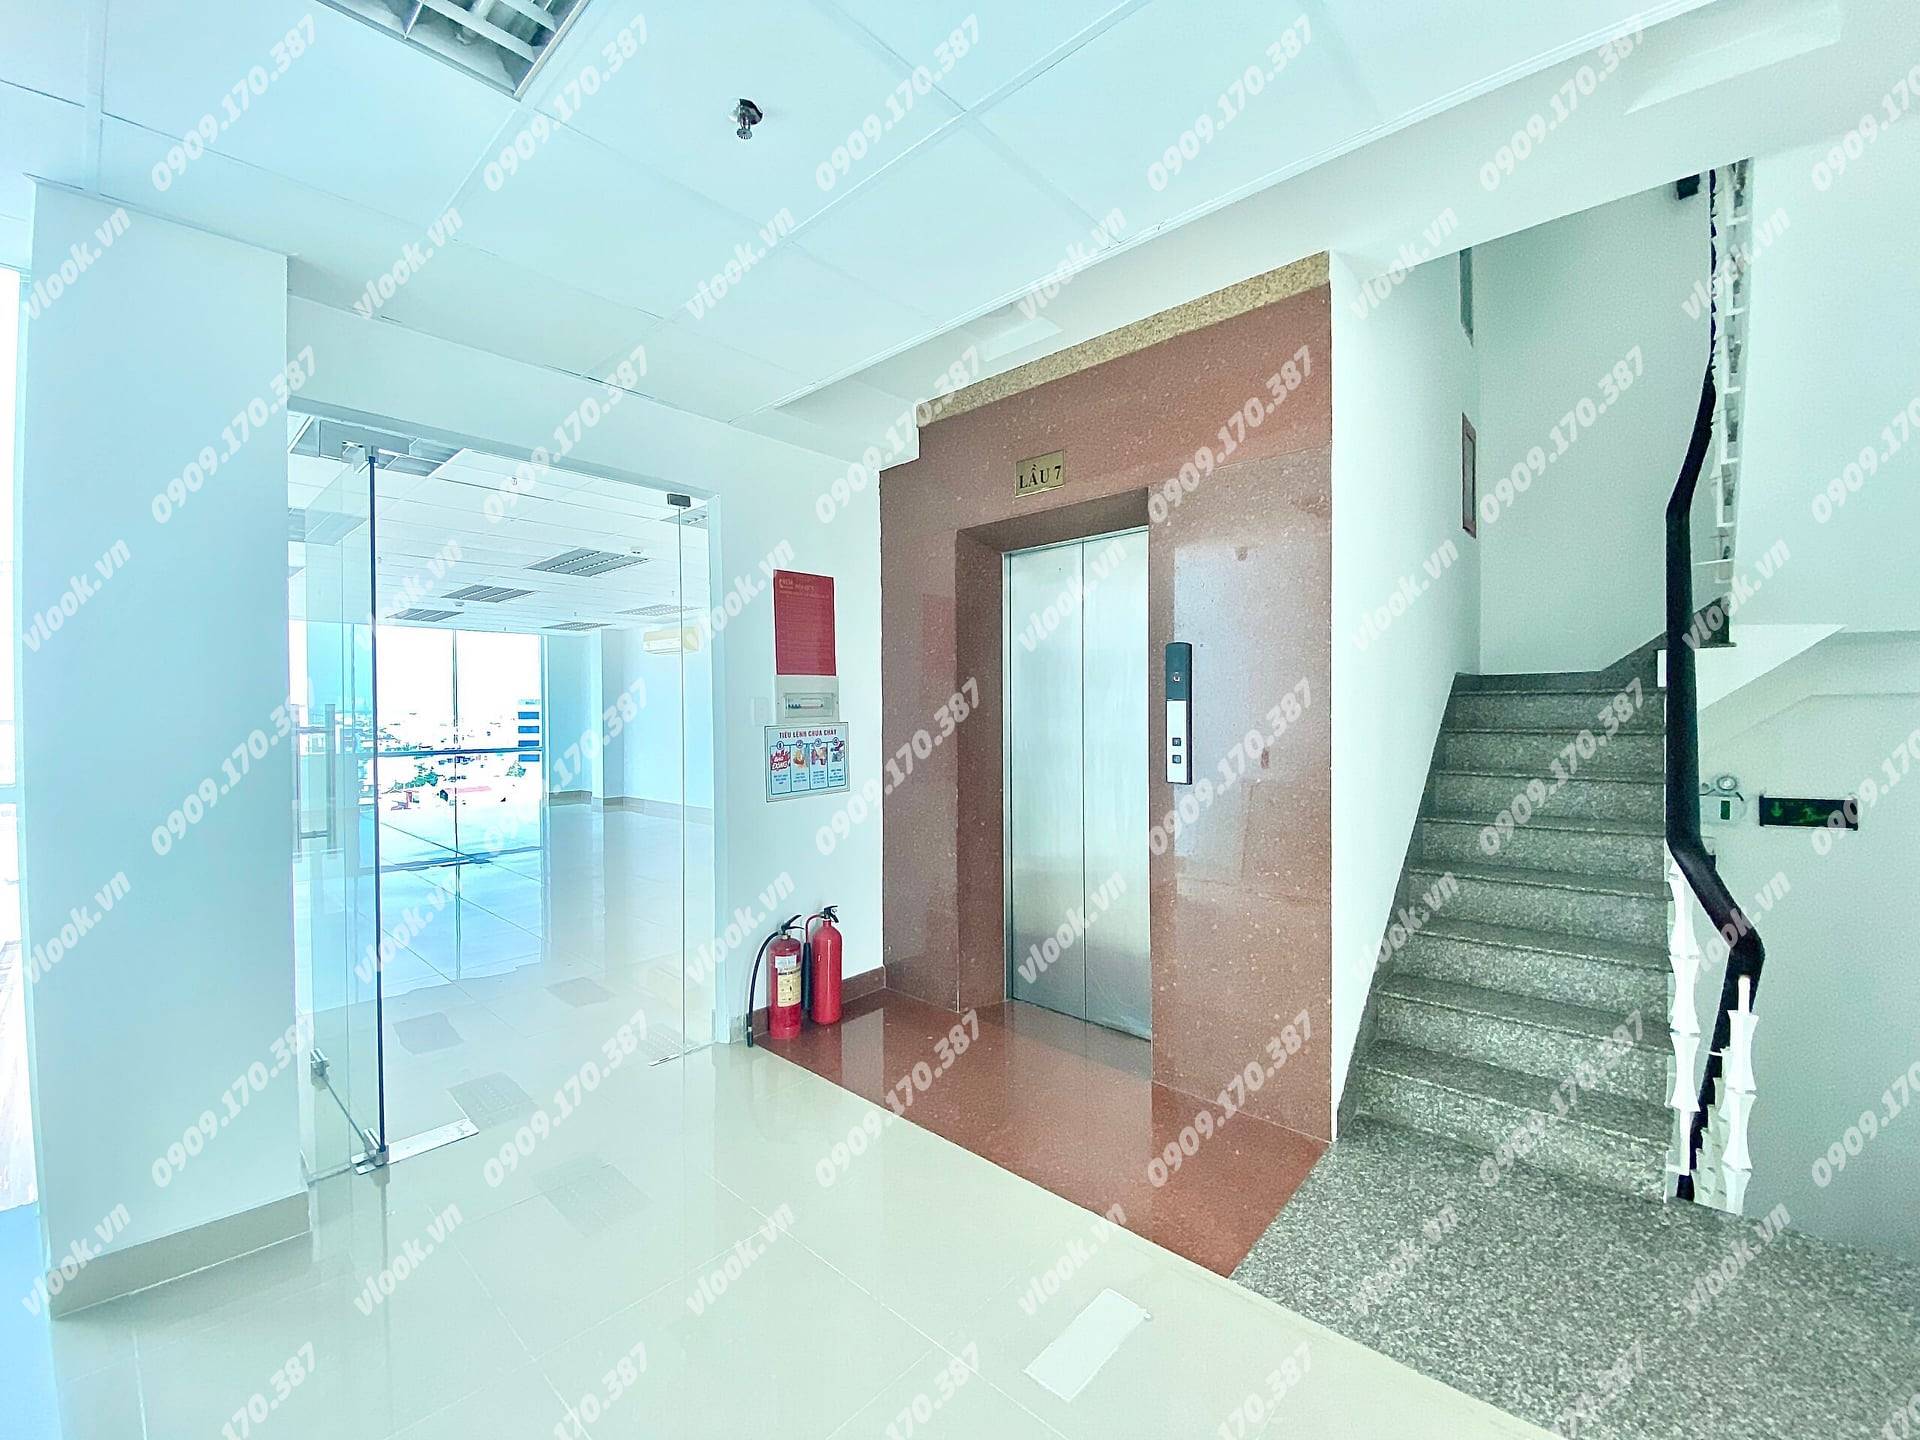 Cao ốc văn phòng cho thuê Tòa nhà Văn phòng Mai Hồng Quế Building, Nguyễn Hữu Cầu, Quận 1, TP.HCM - vlook.vn